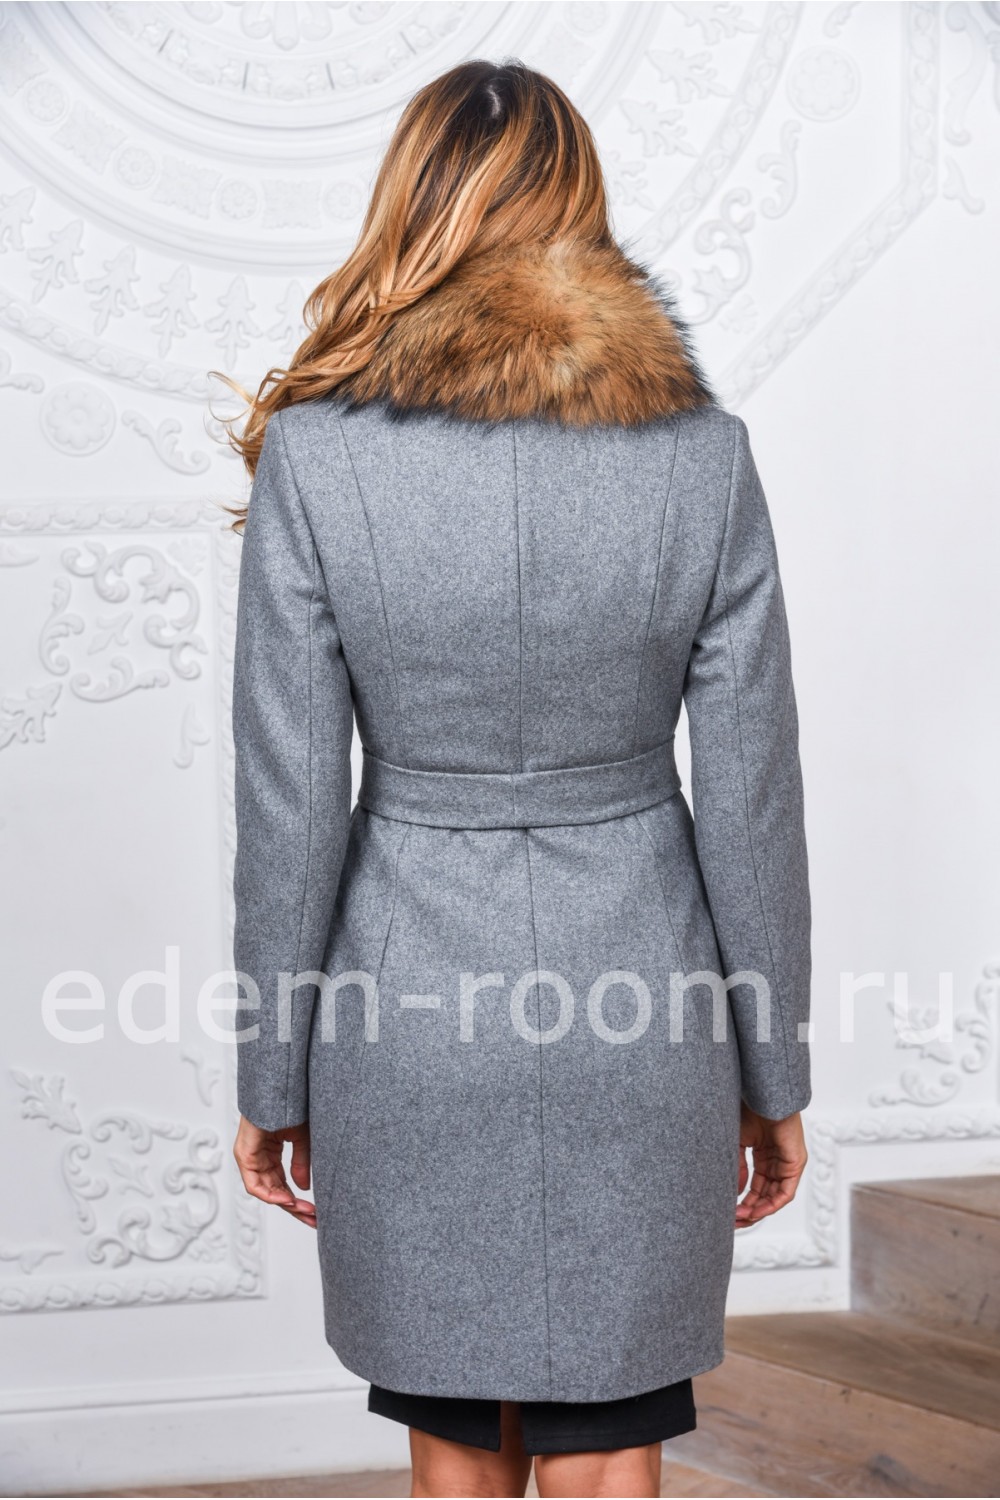 Женское пальто с мехом енота